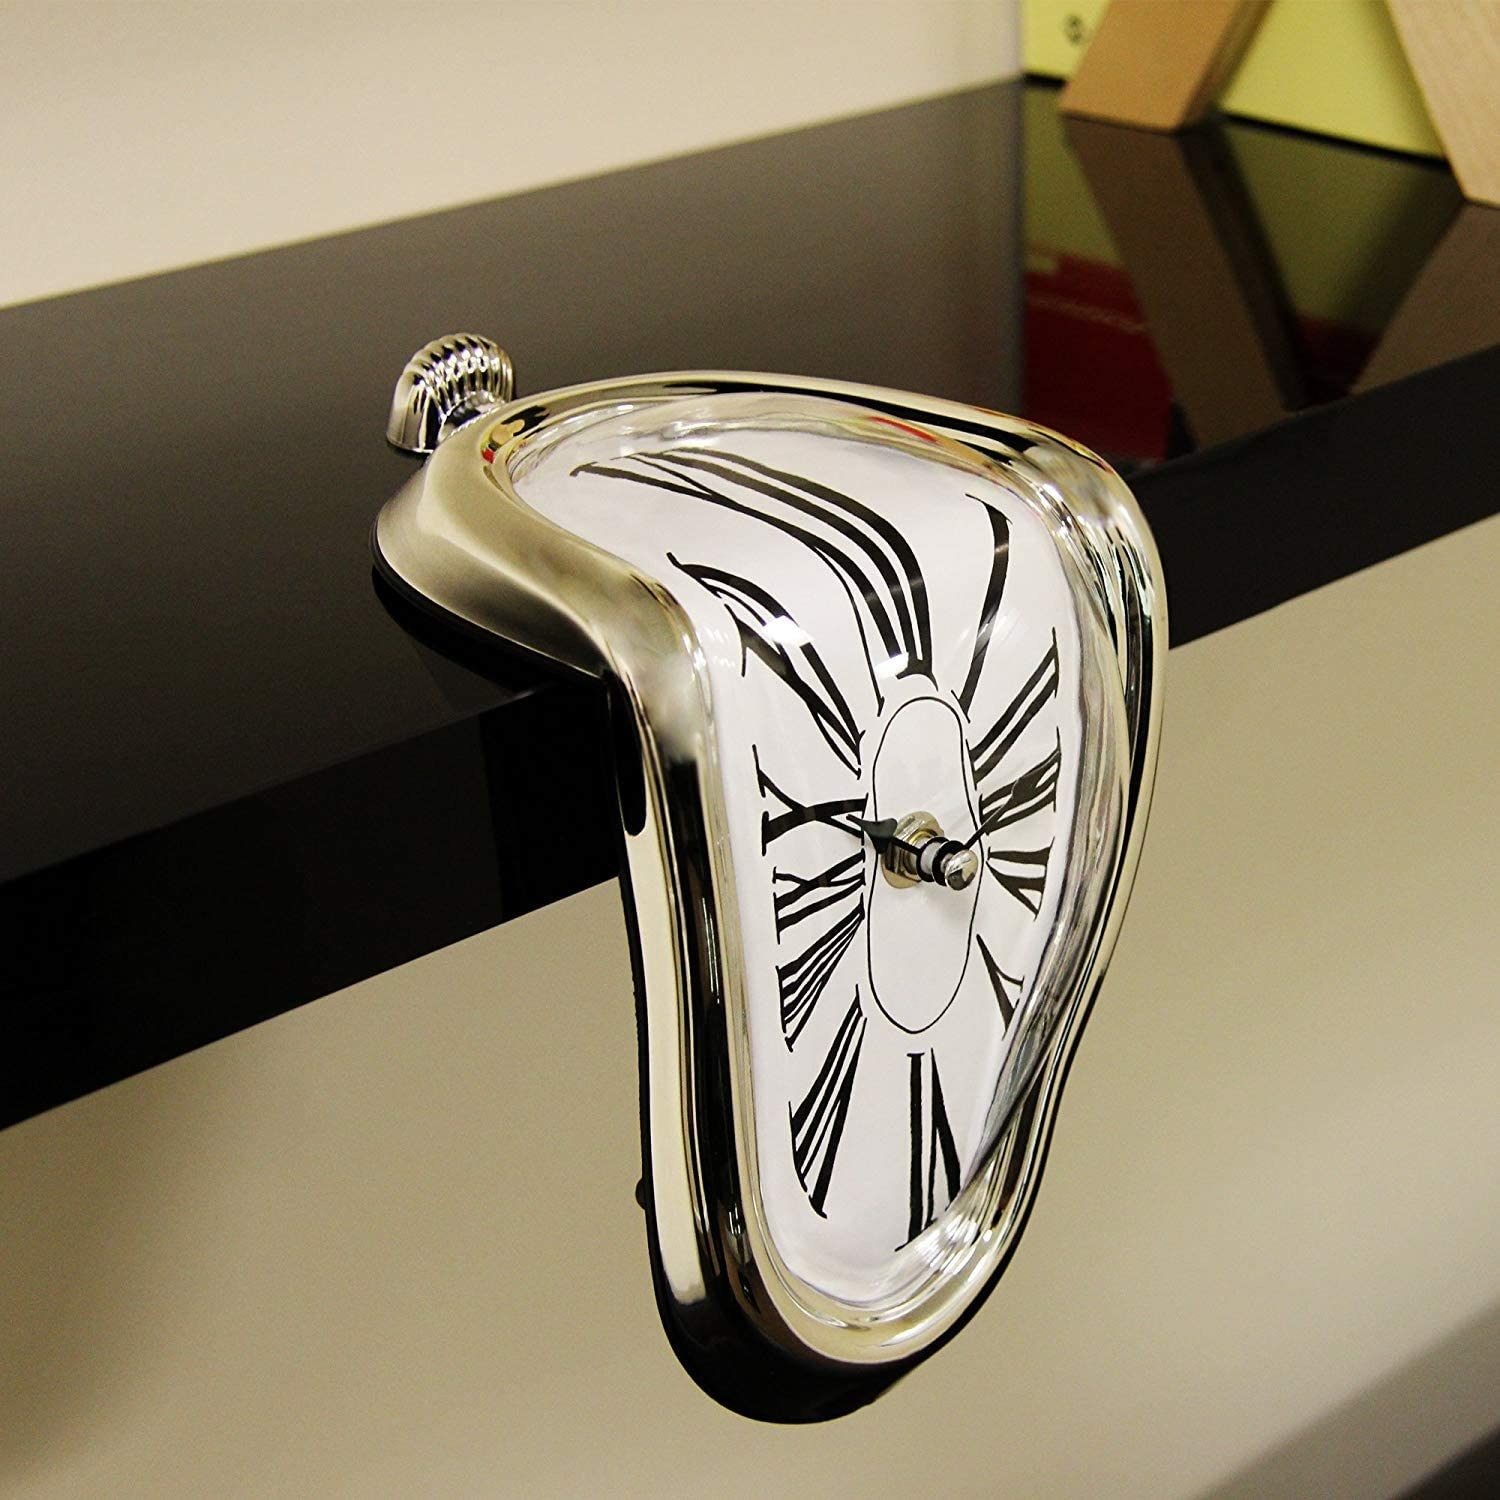 reloj estilo Salvador Dalí